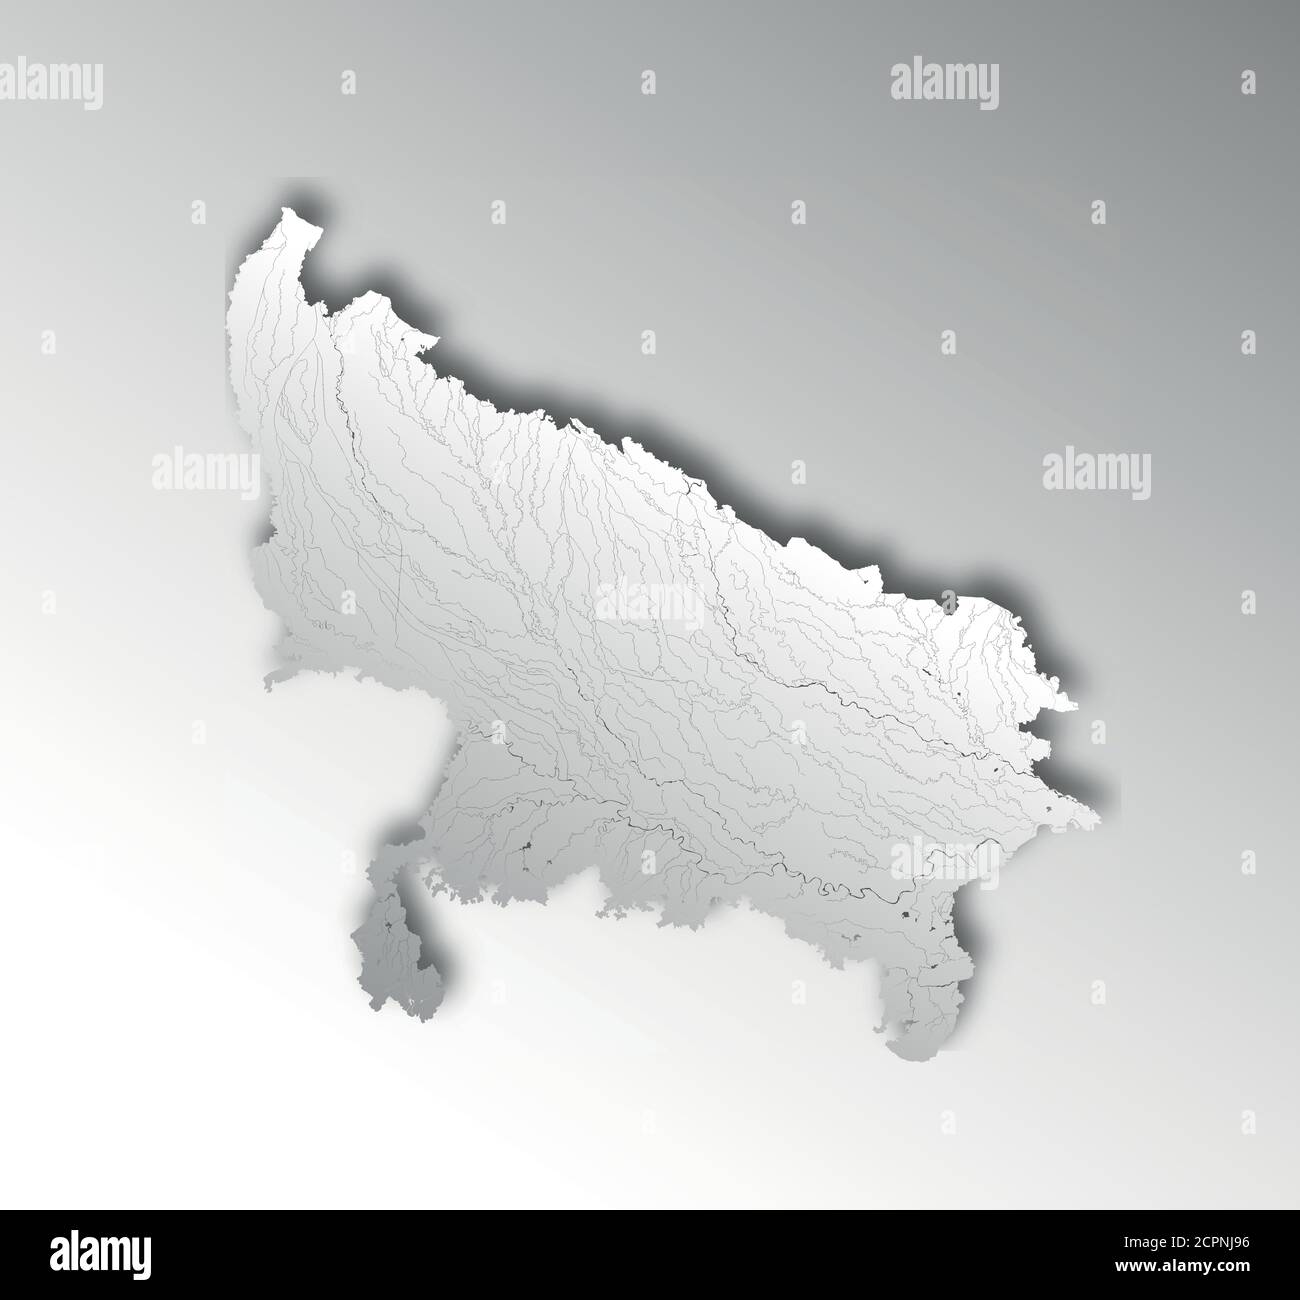 Indien Staaten - Karte von Uttar Pradesh mit Papier Schnitt-Effekt. Flüsse und Seen werden angezeigt. Bitte sehen Sie sich meine anderen Bilder der Kartographischen Serie an - they ar Stock Vektor